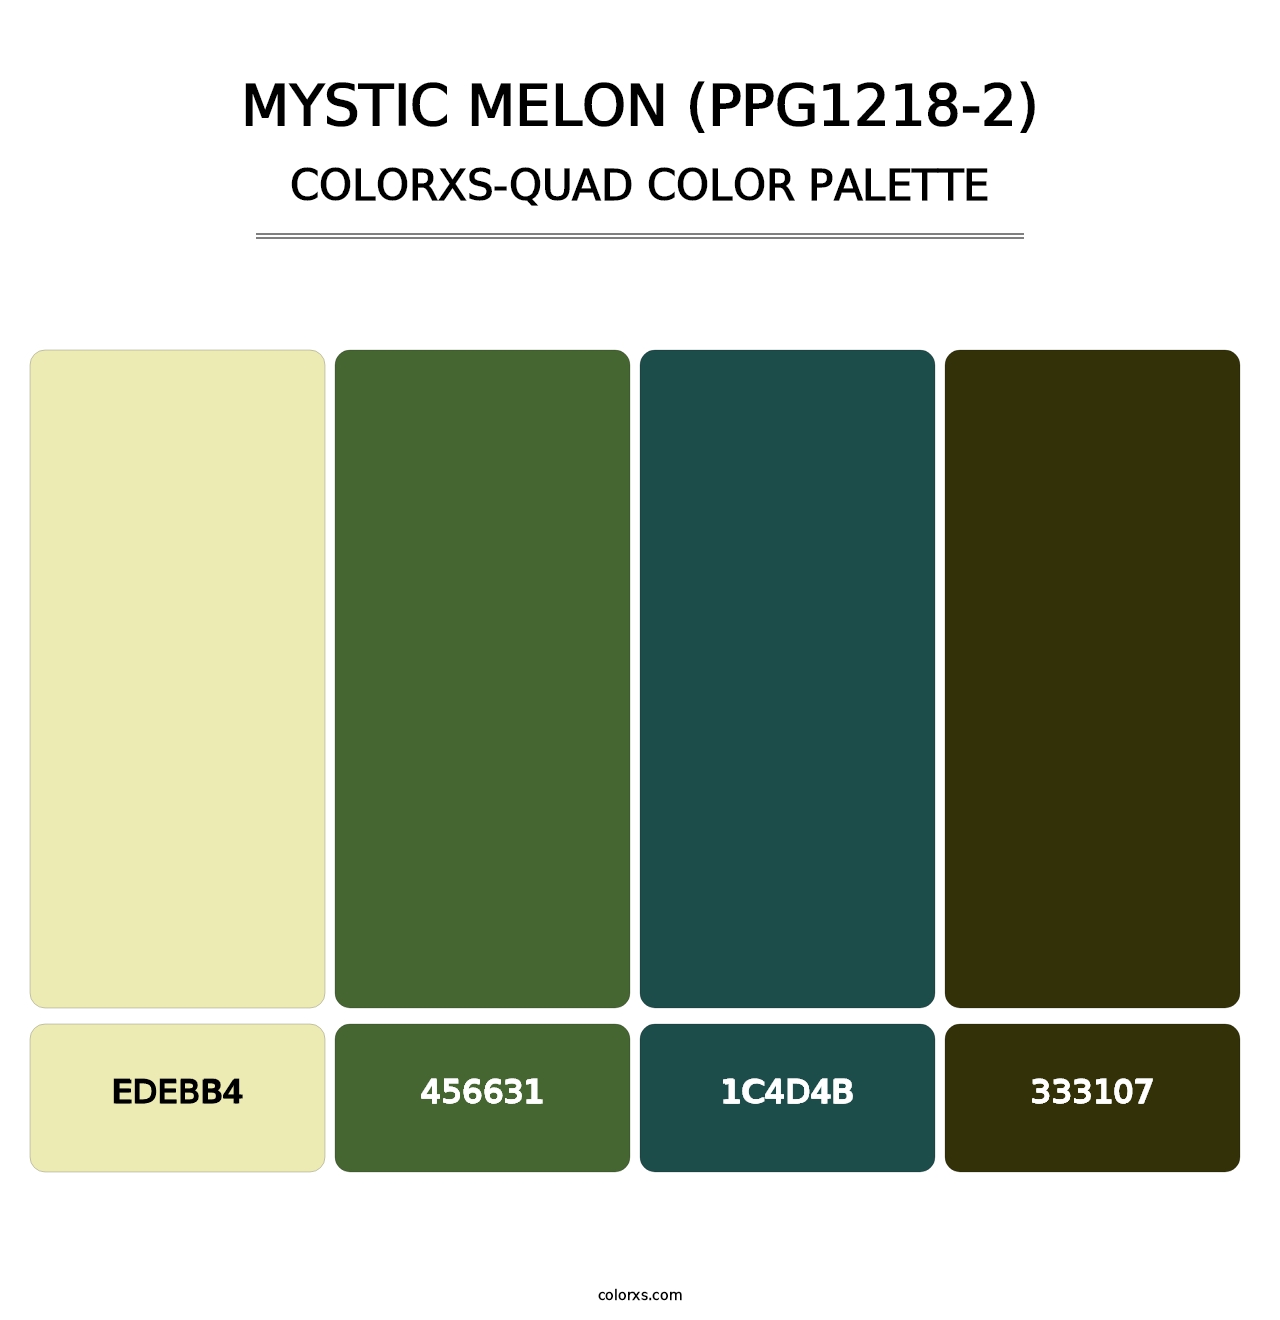 Mystic Melon (PPG1218-2) - Colorxs Quad Palette